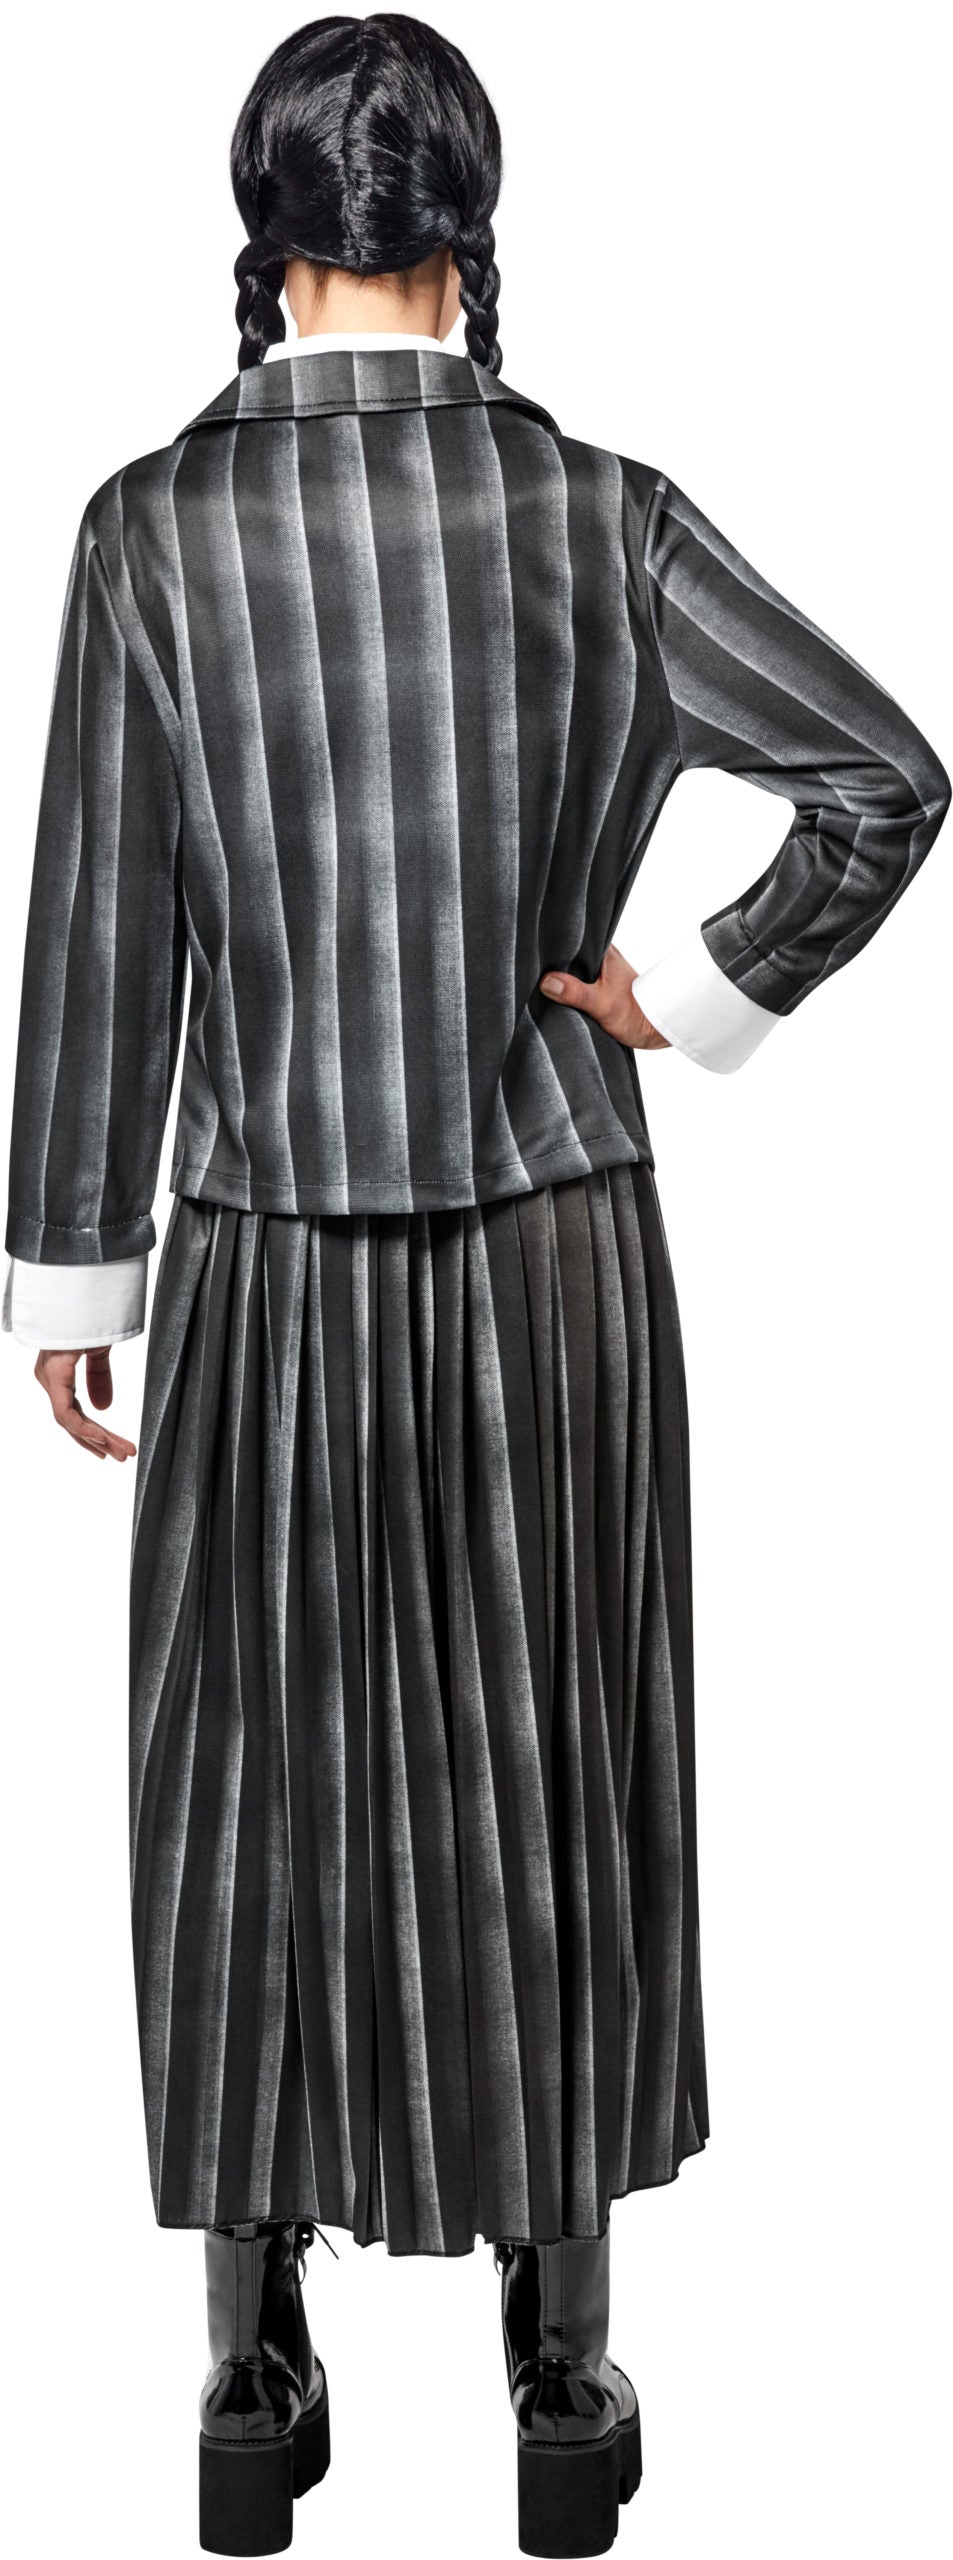 WEDNESDAY - Nevermore Academy Uniform Adult Costume